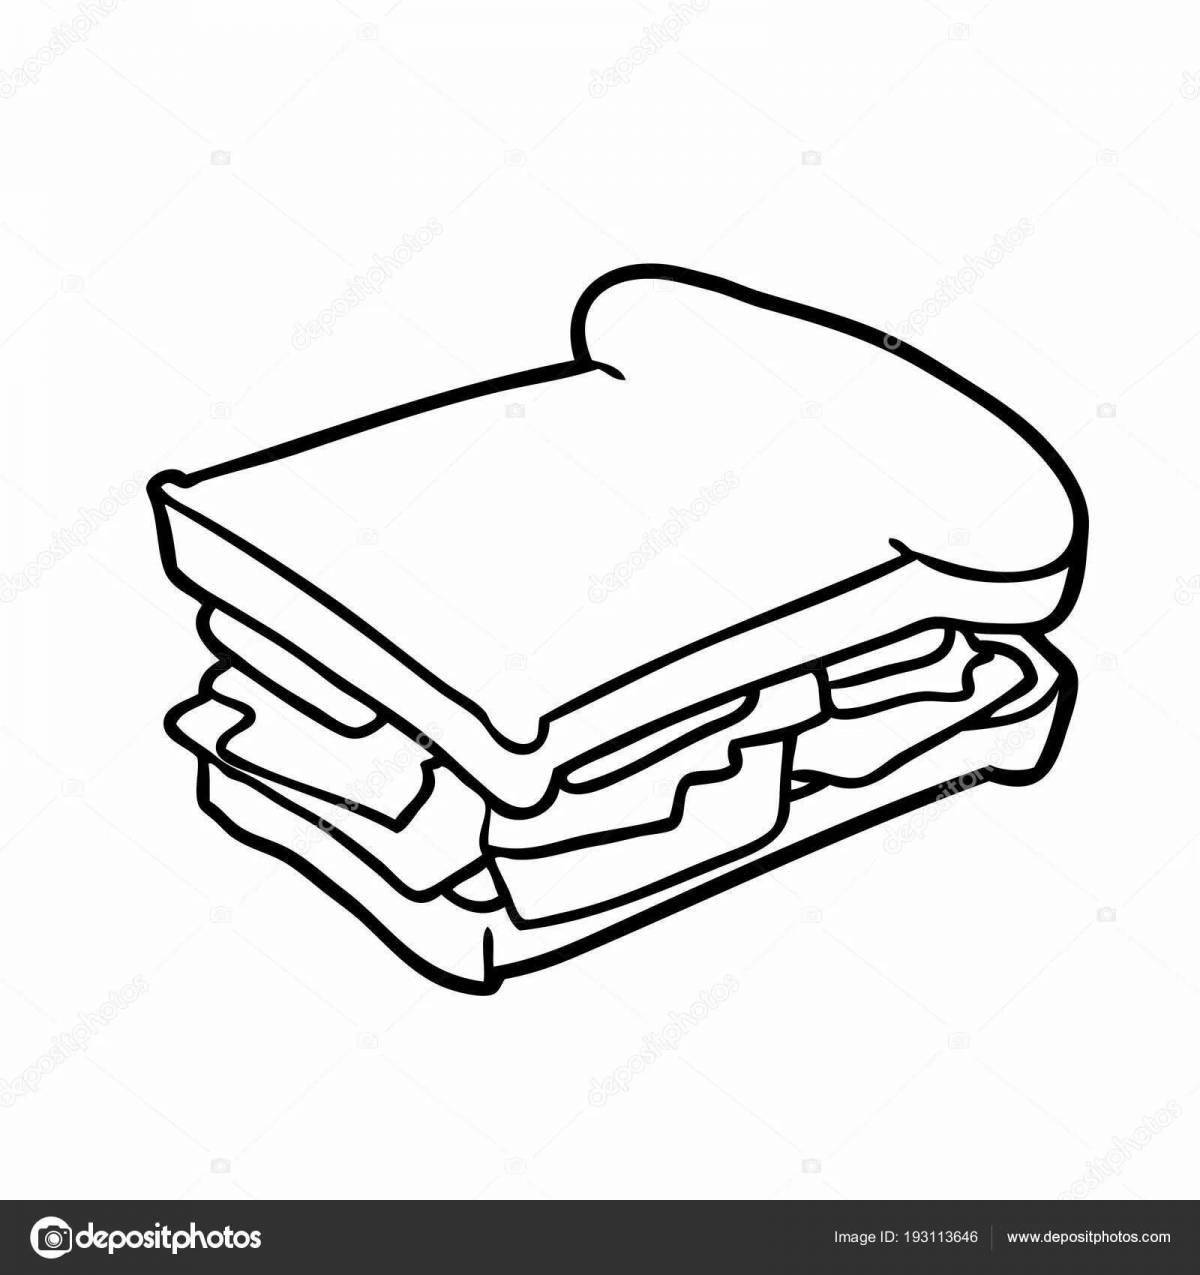 Приглашающая страница раскраски бутерброда с колбасой